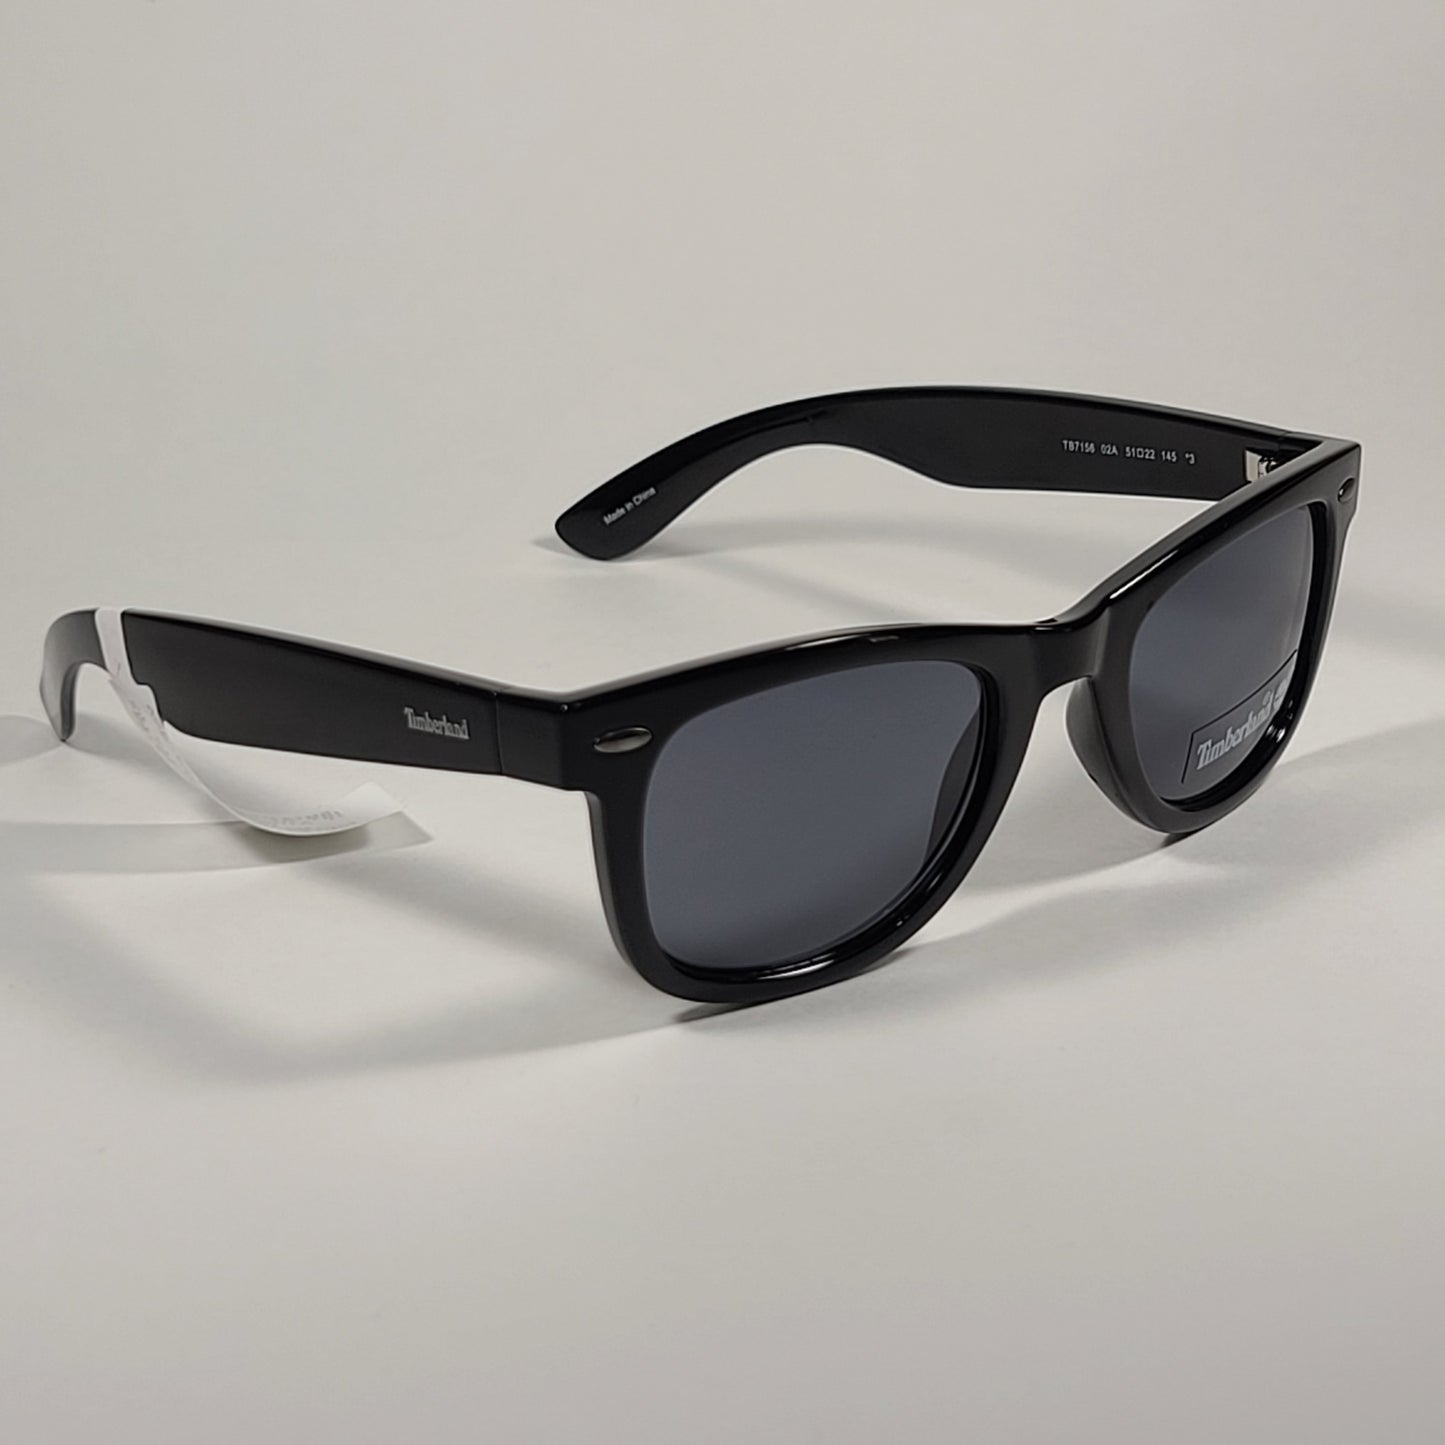 Timberland Square Sunglasses Shiny Black Frame Gray Lens TB7156 02A - Sunglasses